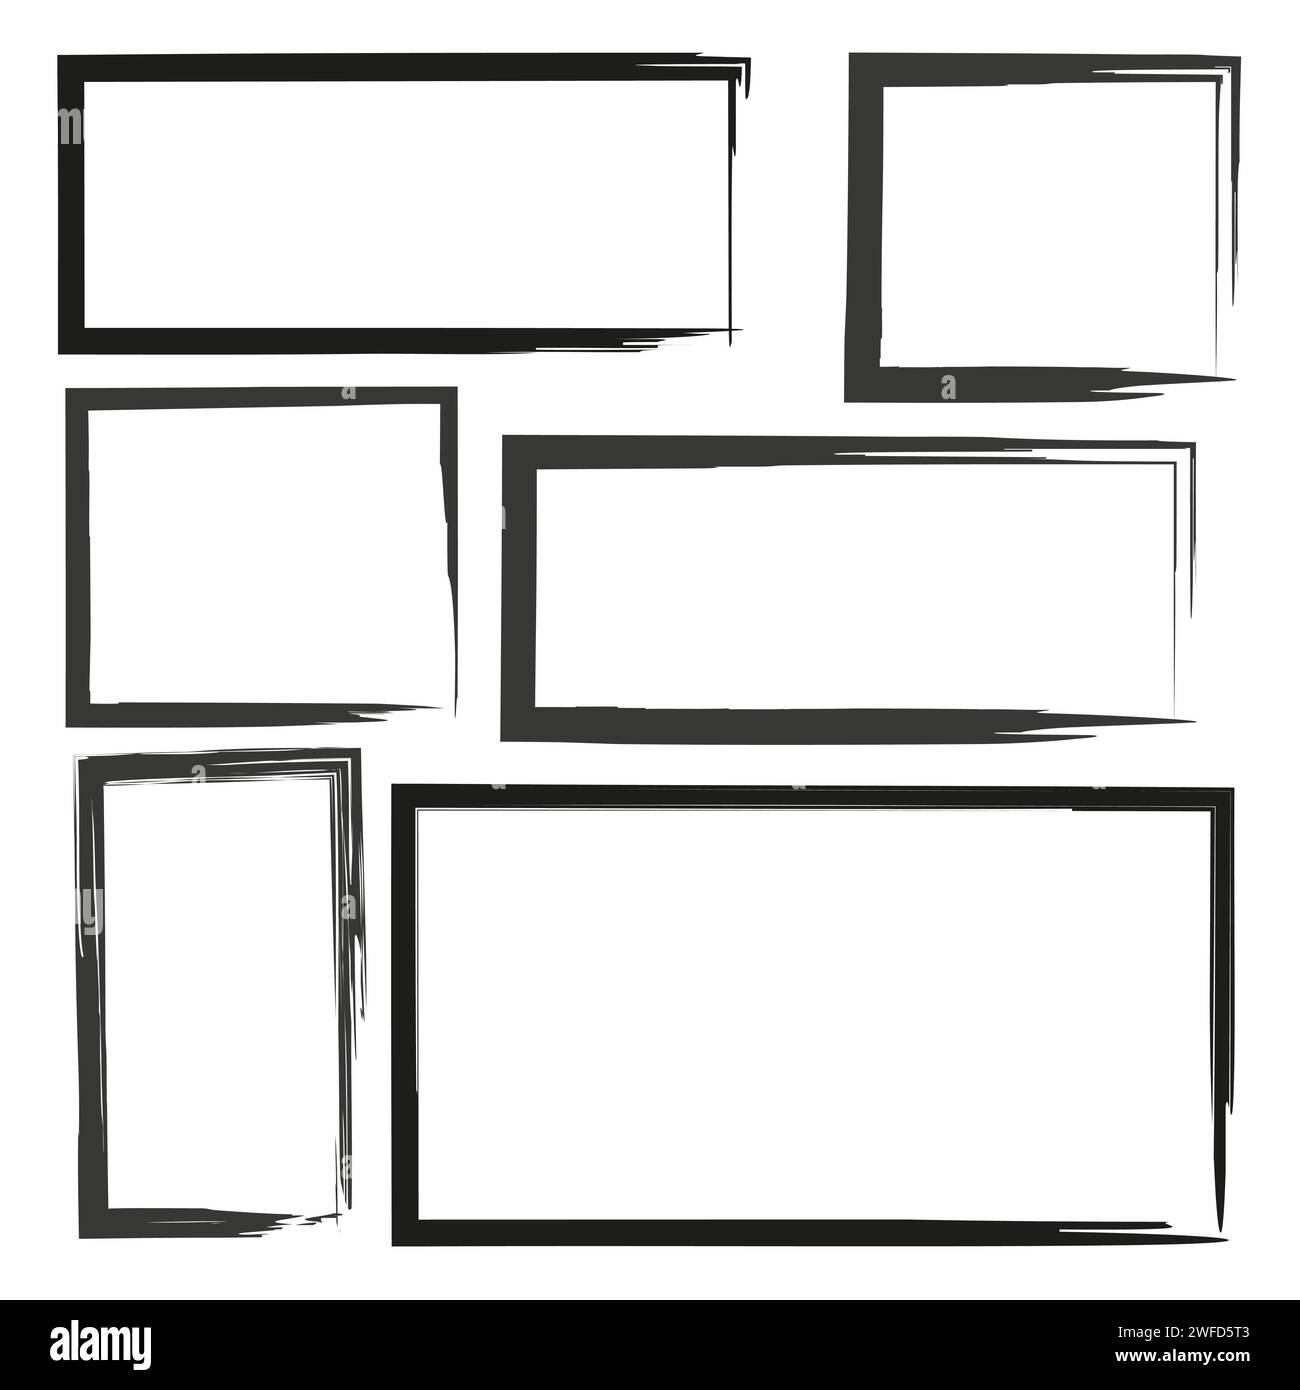 Vector de marcos dibujados a mano ilustración de marco de imagen de dibujo  de garabato vintage cuadro cuadrado negro en blanco etiqueta de rectángulo  línea de bocetos elegante aislada sobre fondo blanco